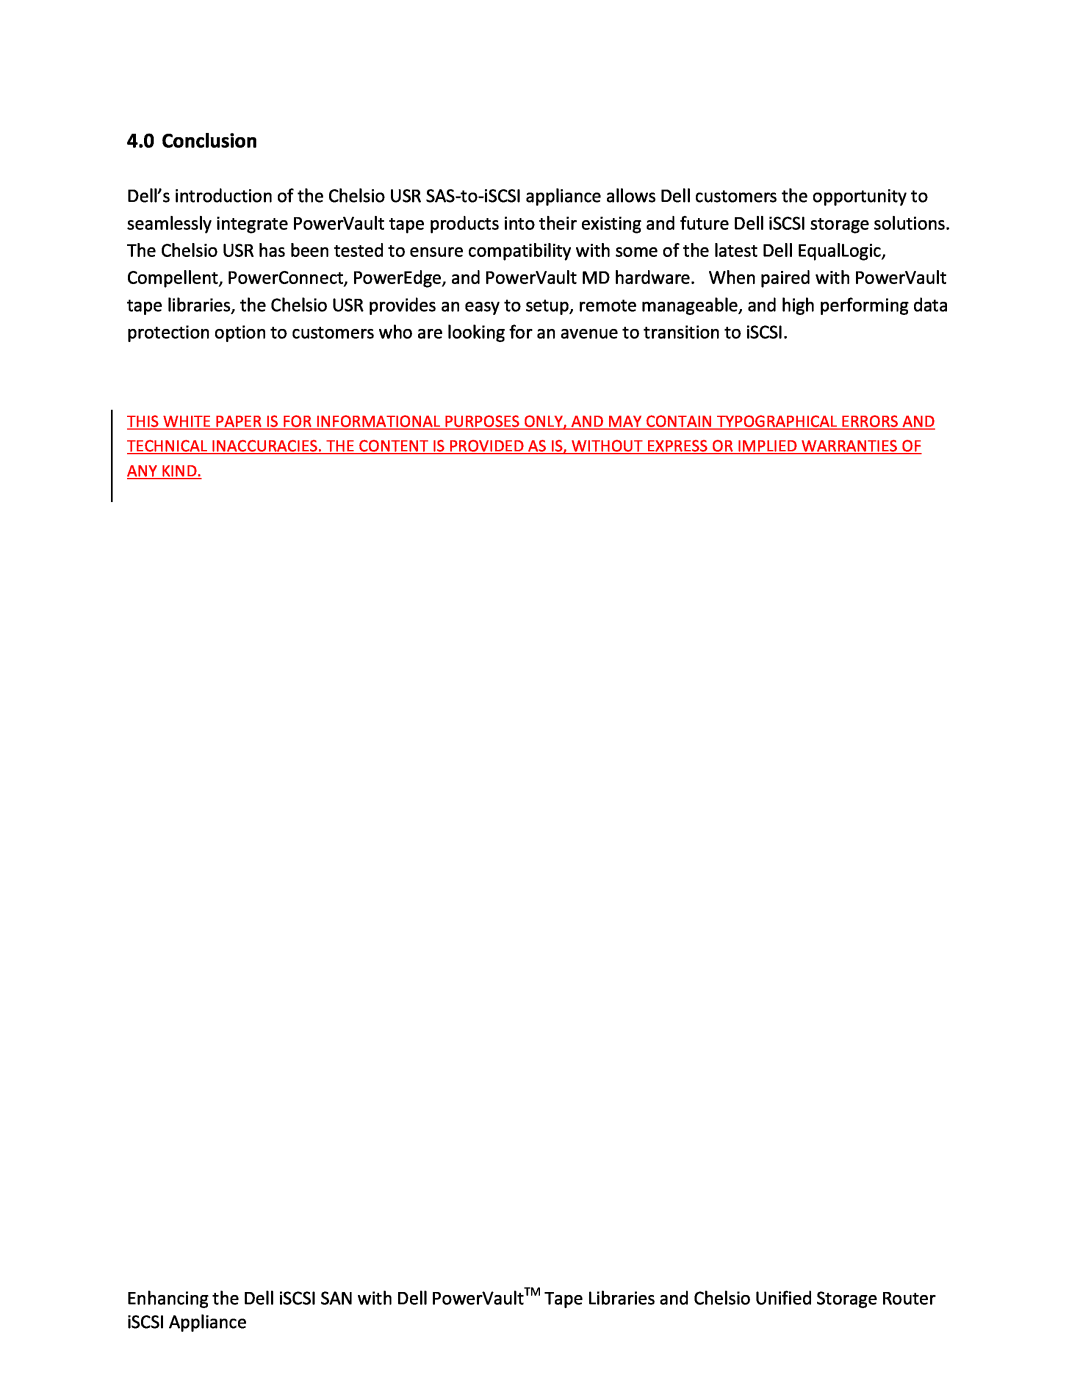 Dell Chelsio USR SAS-to-iSCSI Appliance manual Conclusion 